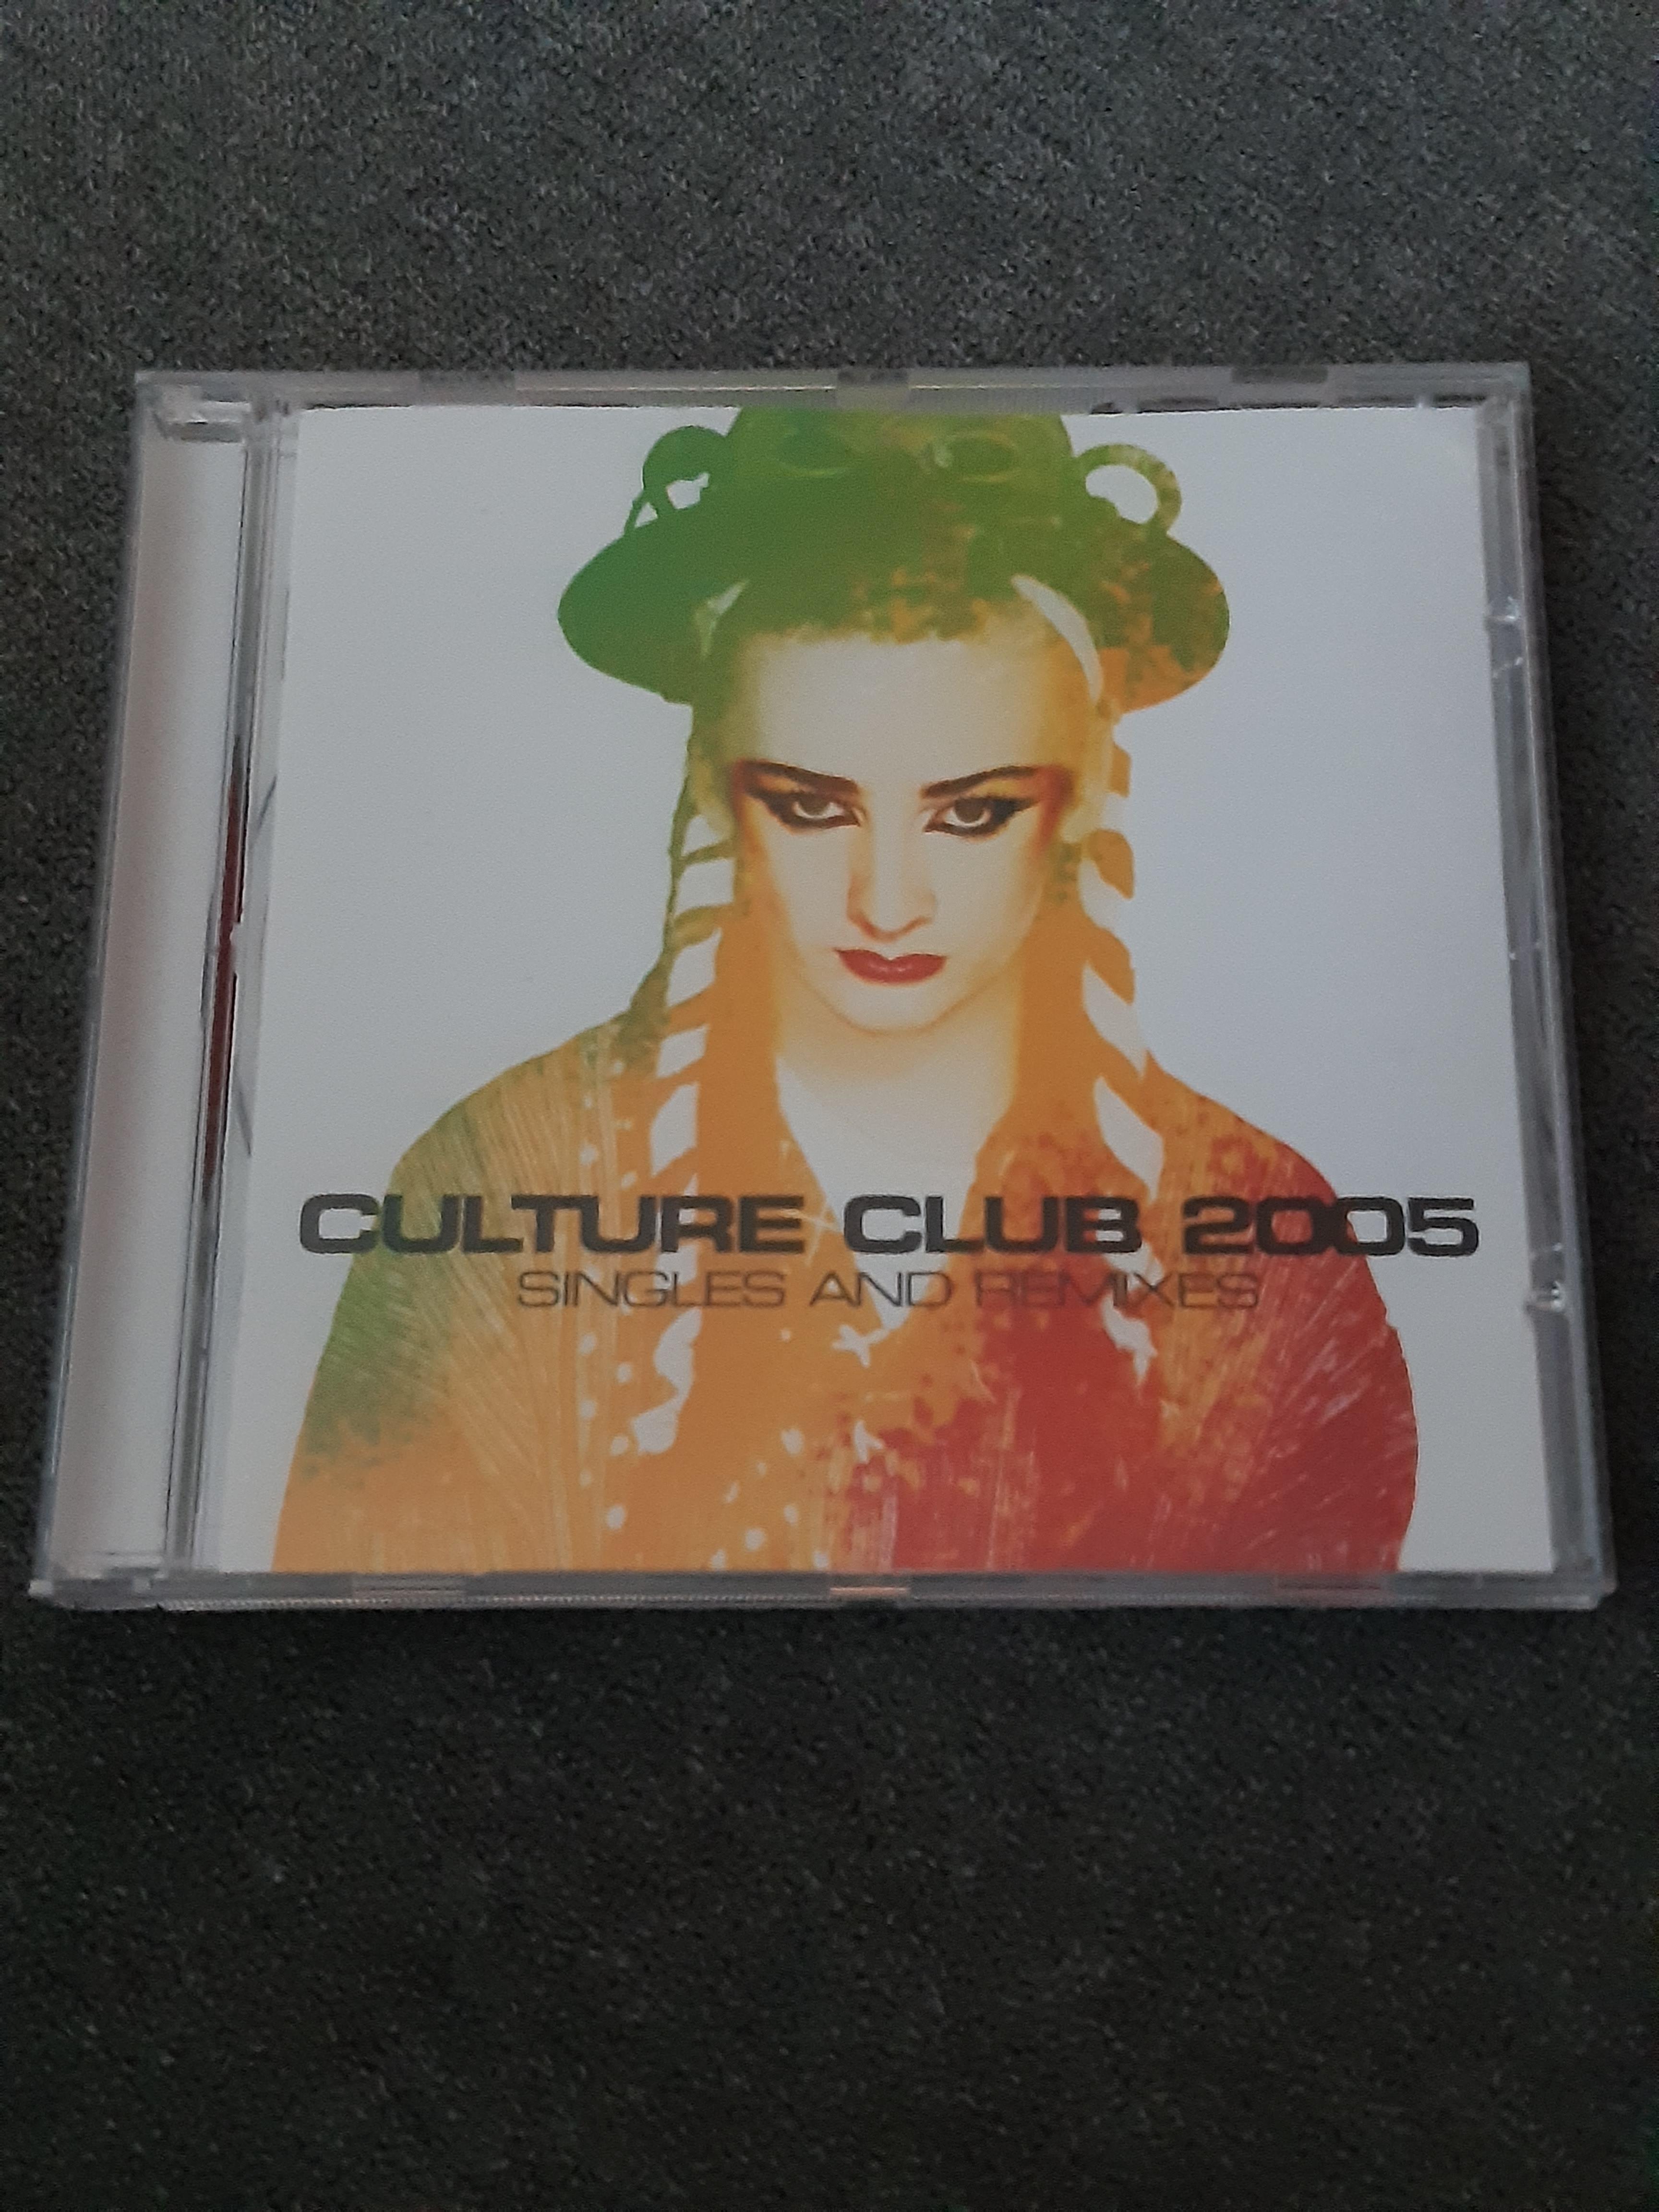 Culture Club - 2005 Singles And Remixes - CD